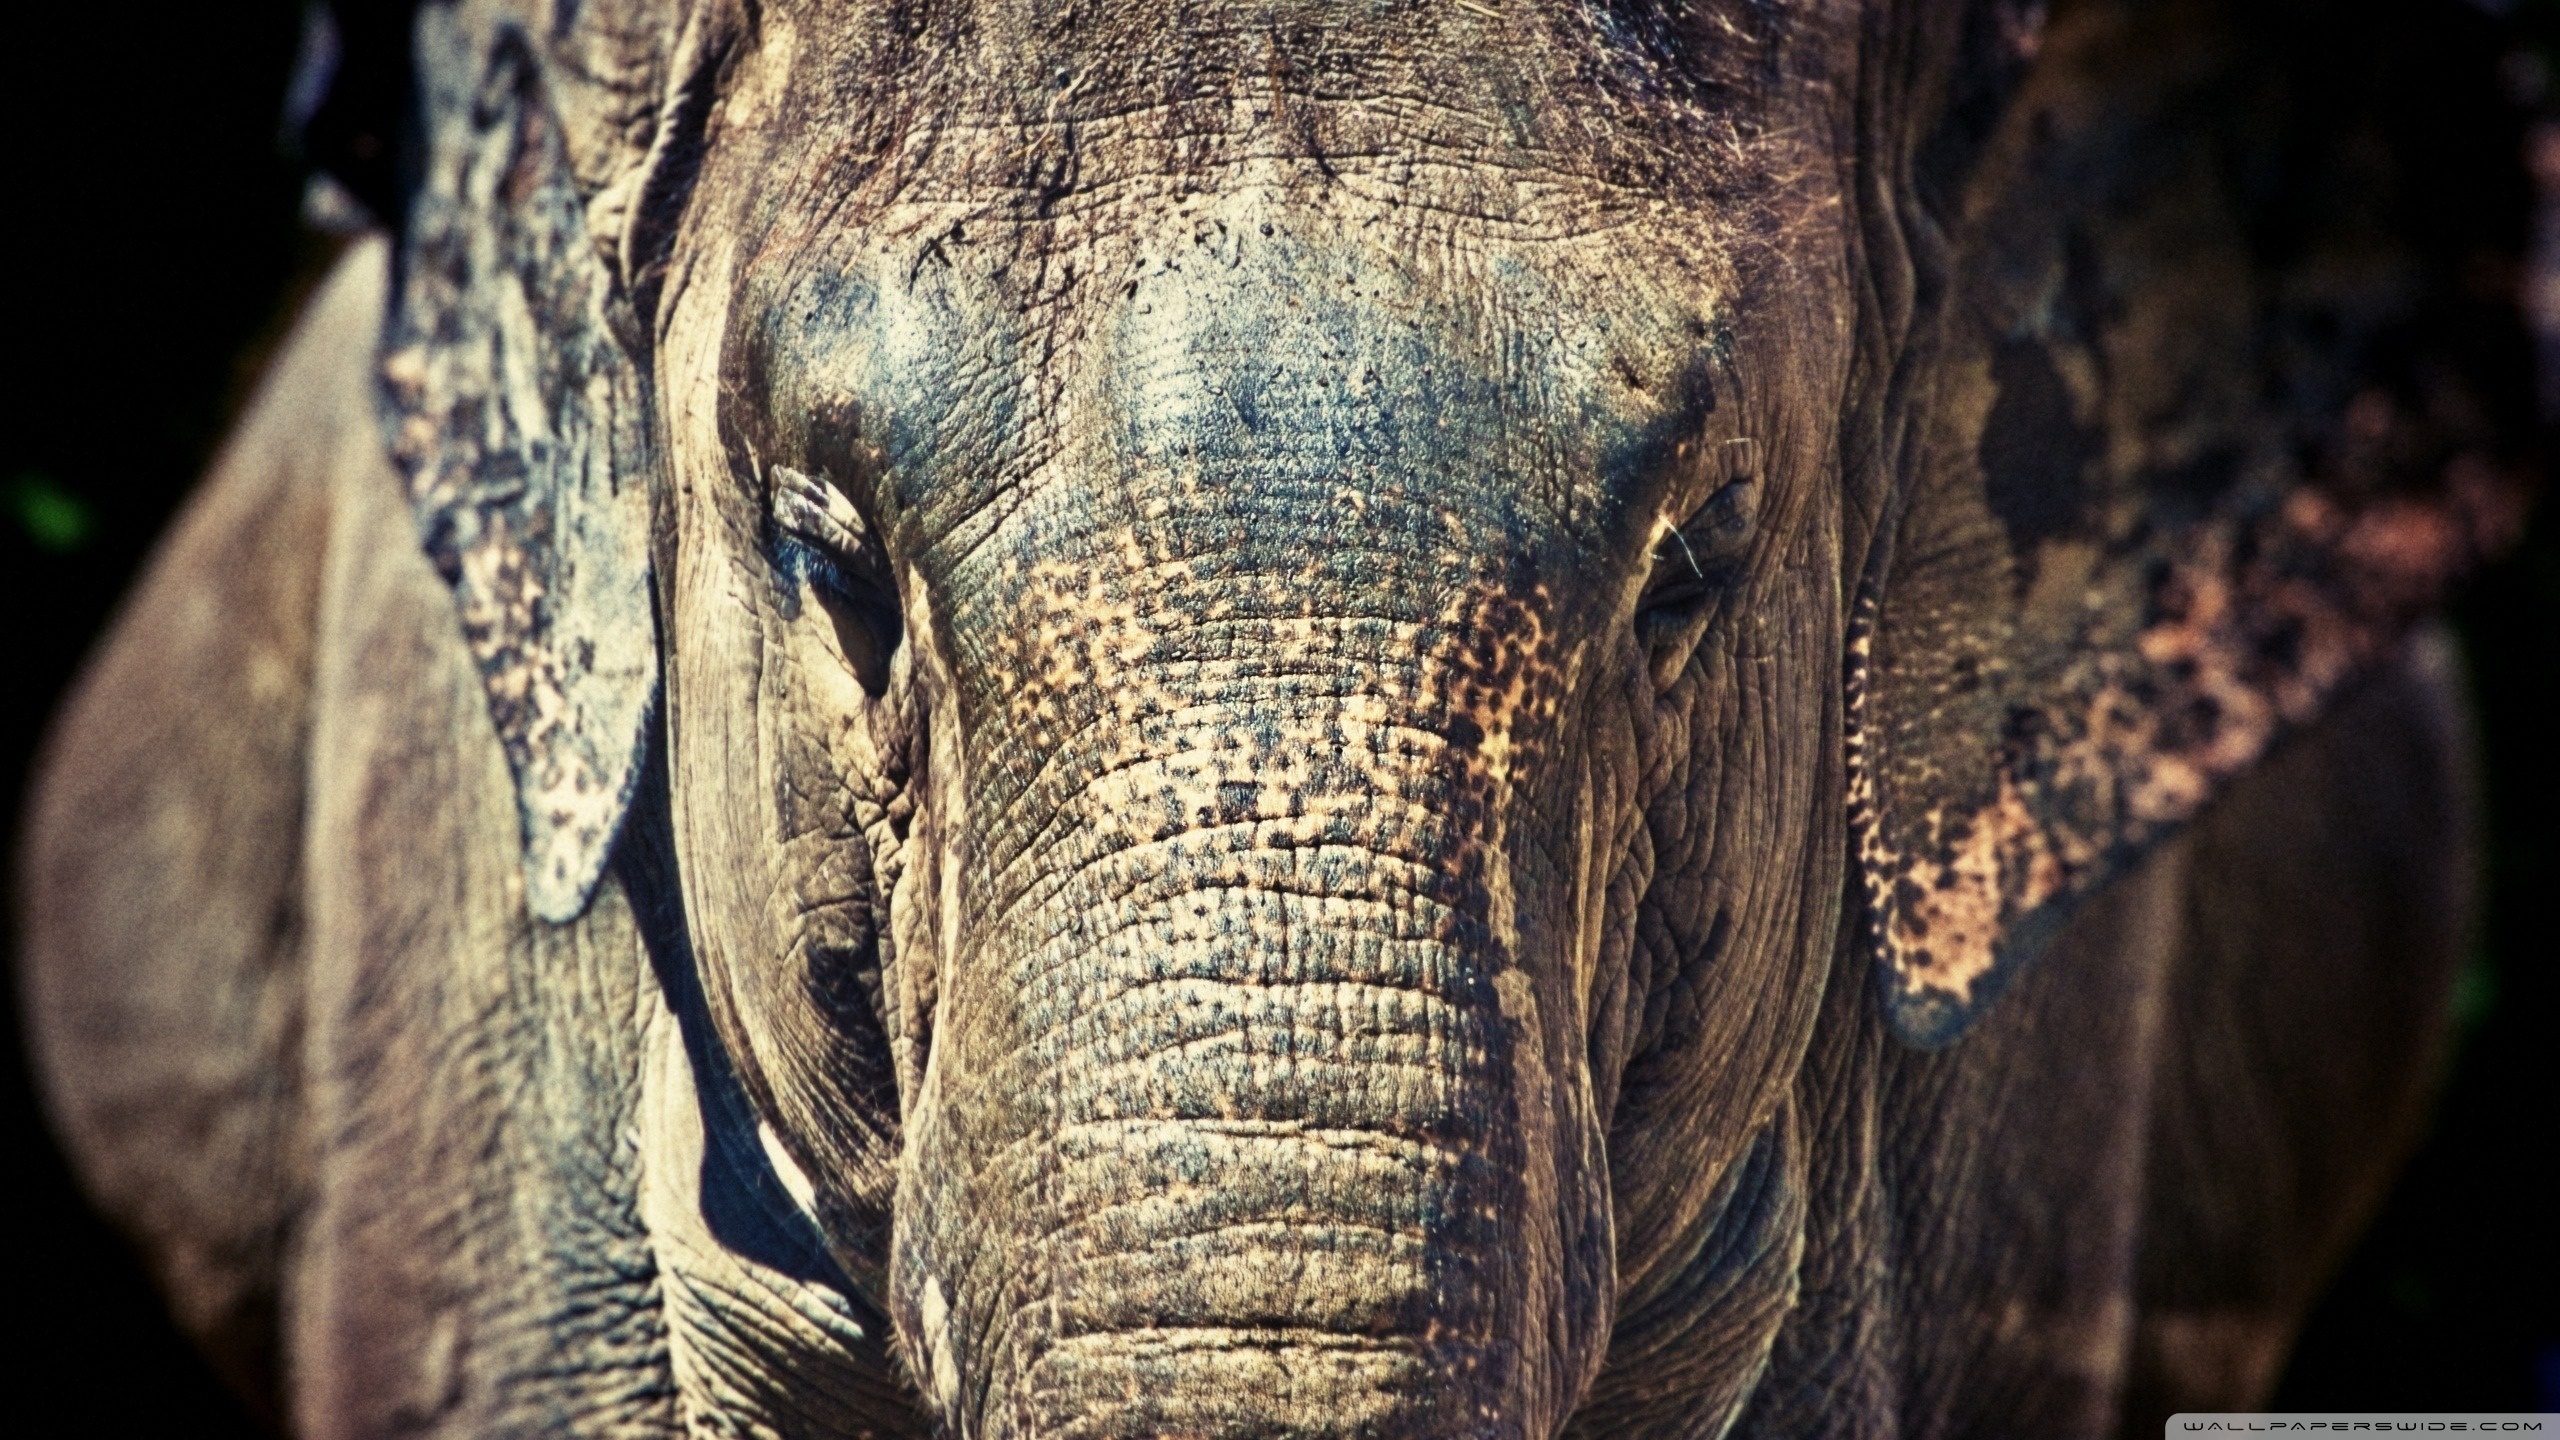 Descarga gratuita de fondo de pantalla para móvil de Elefante Asiático, Elefantes, Animales.